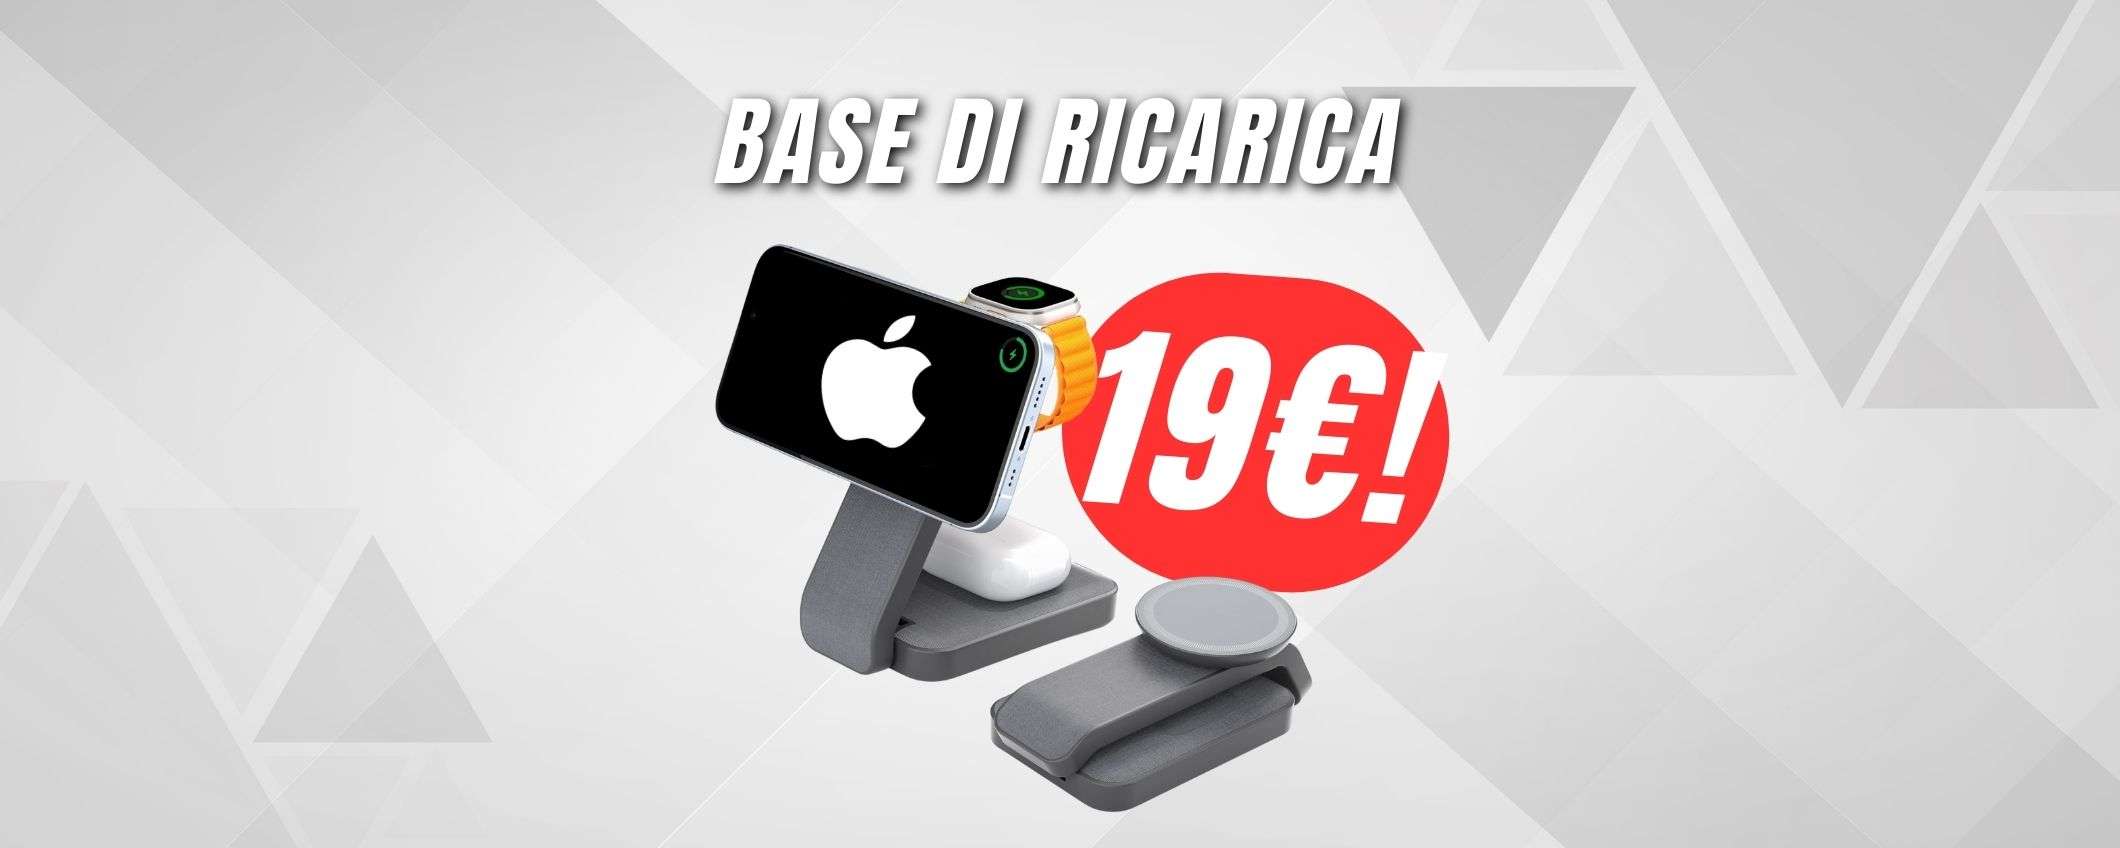 Carica iPhone, Apple Watch e AirPods a 19€ grazie a questa stazione WIRELESS!